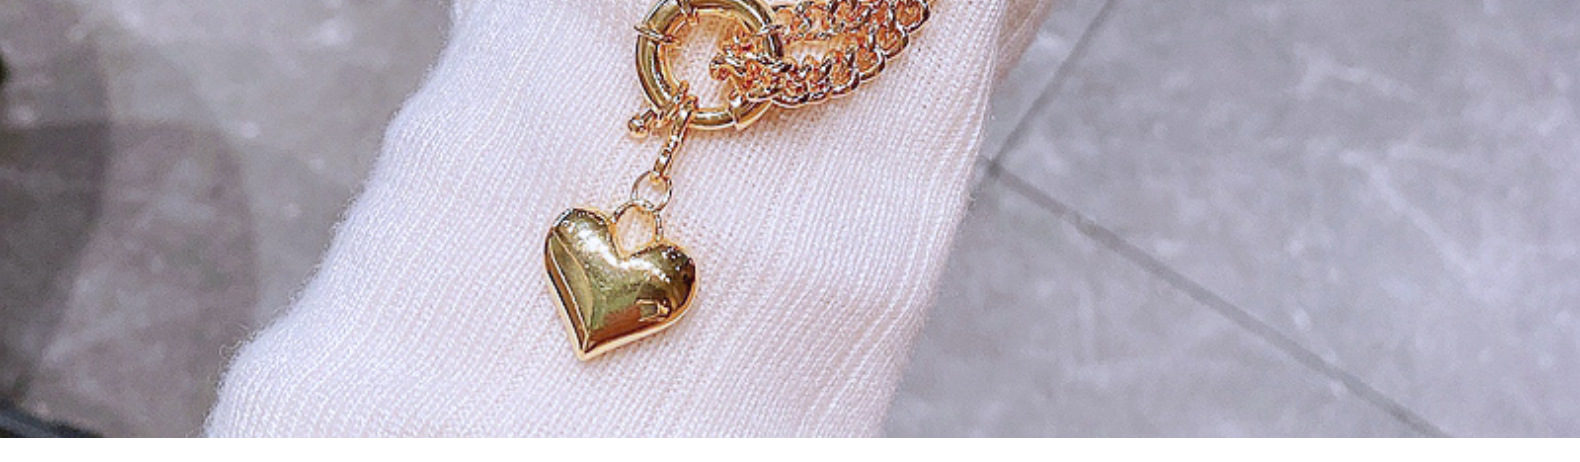 Collier en forme de coeur plaqu cuivre or mode bijoux de chane de clavicule asymtriquepicture7